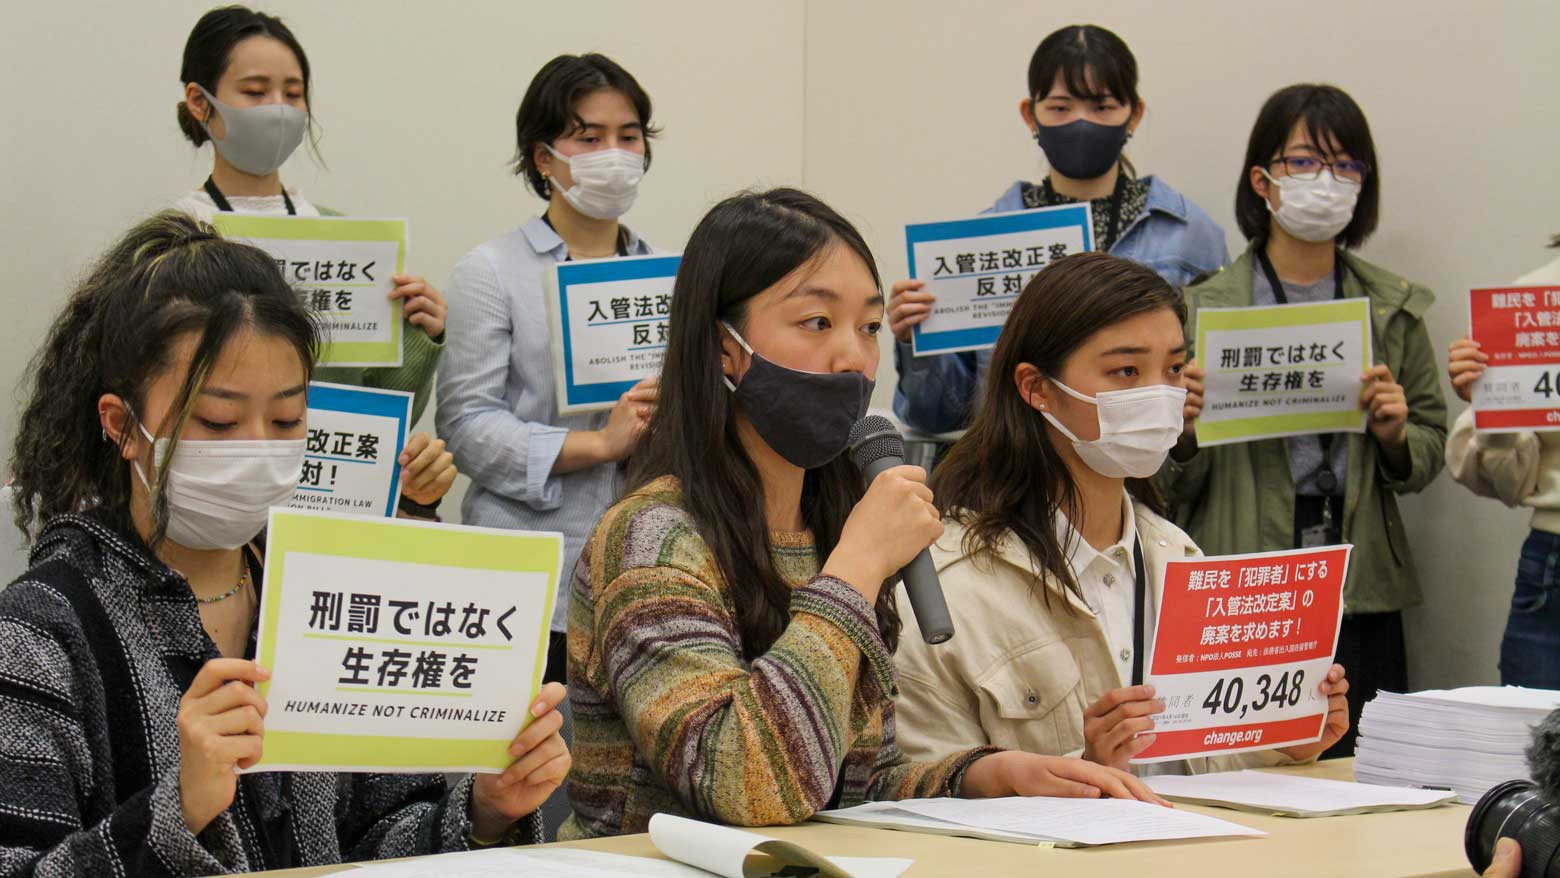 Кампания протеста направлена против реформы иммиграционного законодательства Японии